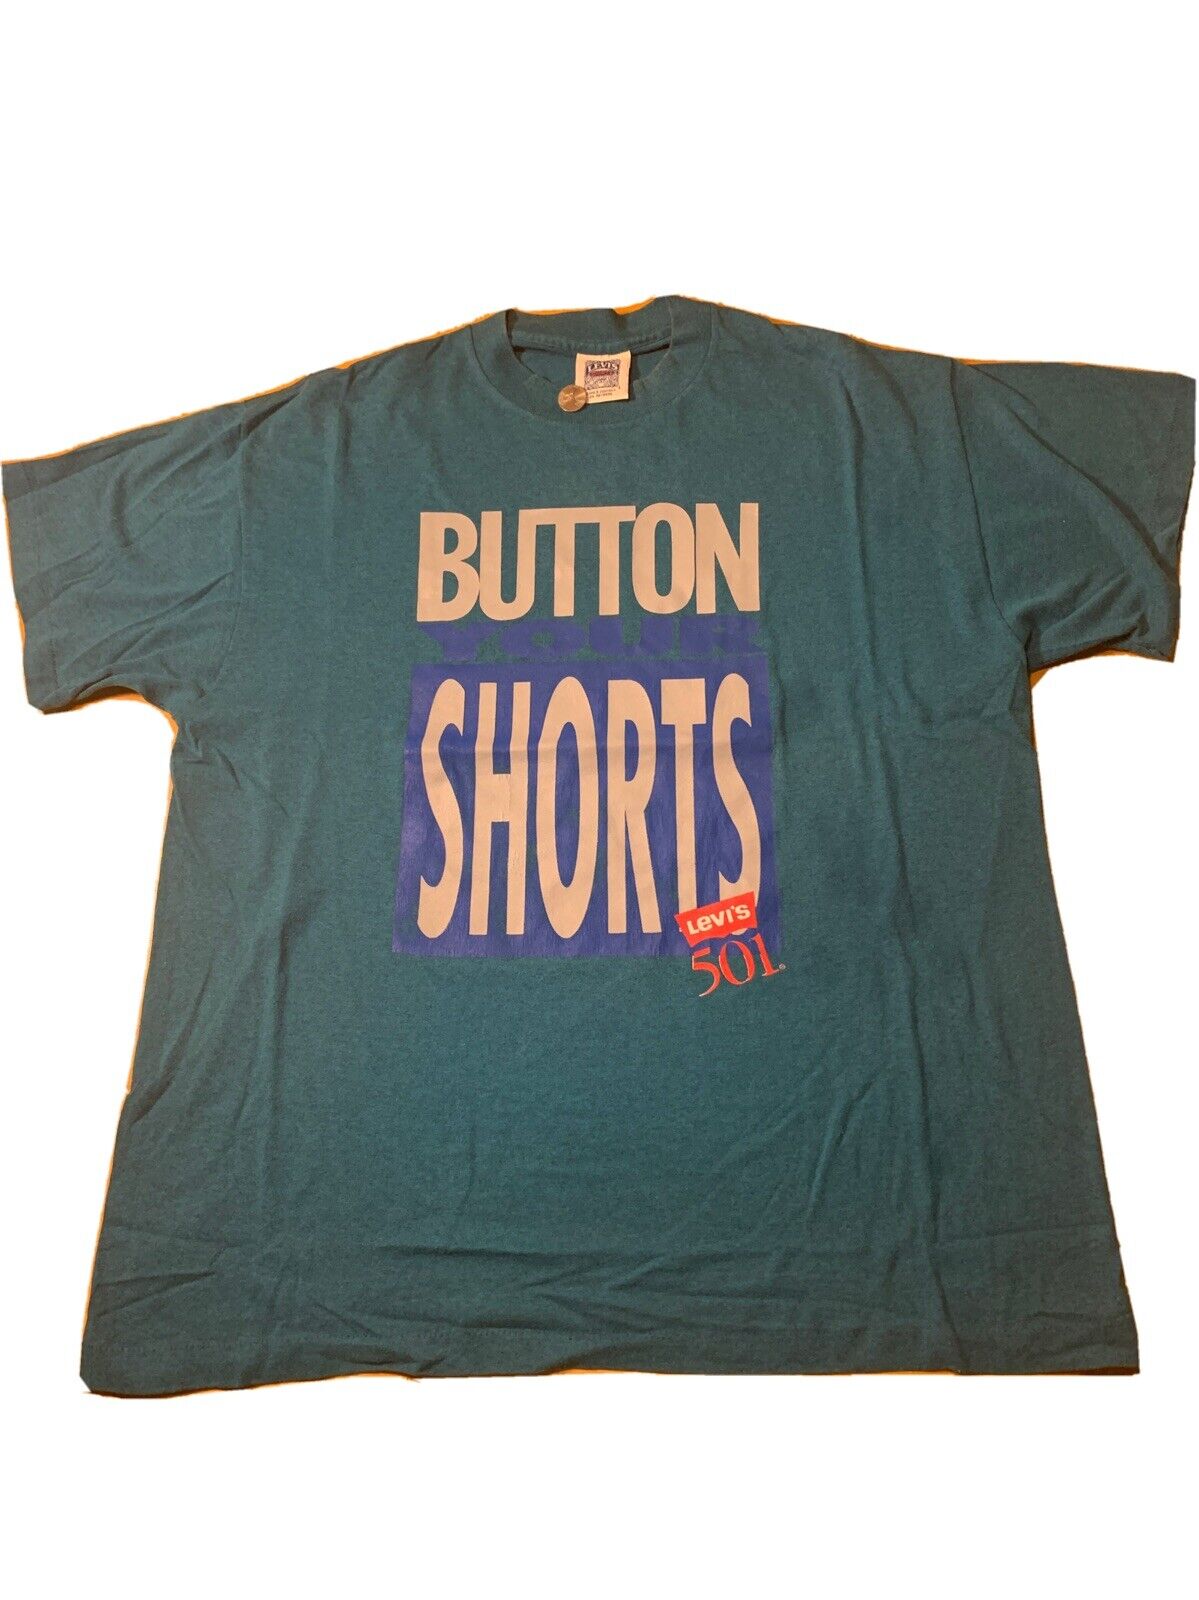 Vintage 90s Levi’s 501 Button Your Shorts Single … - image 1